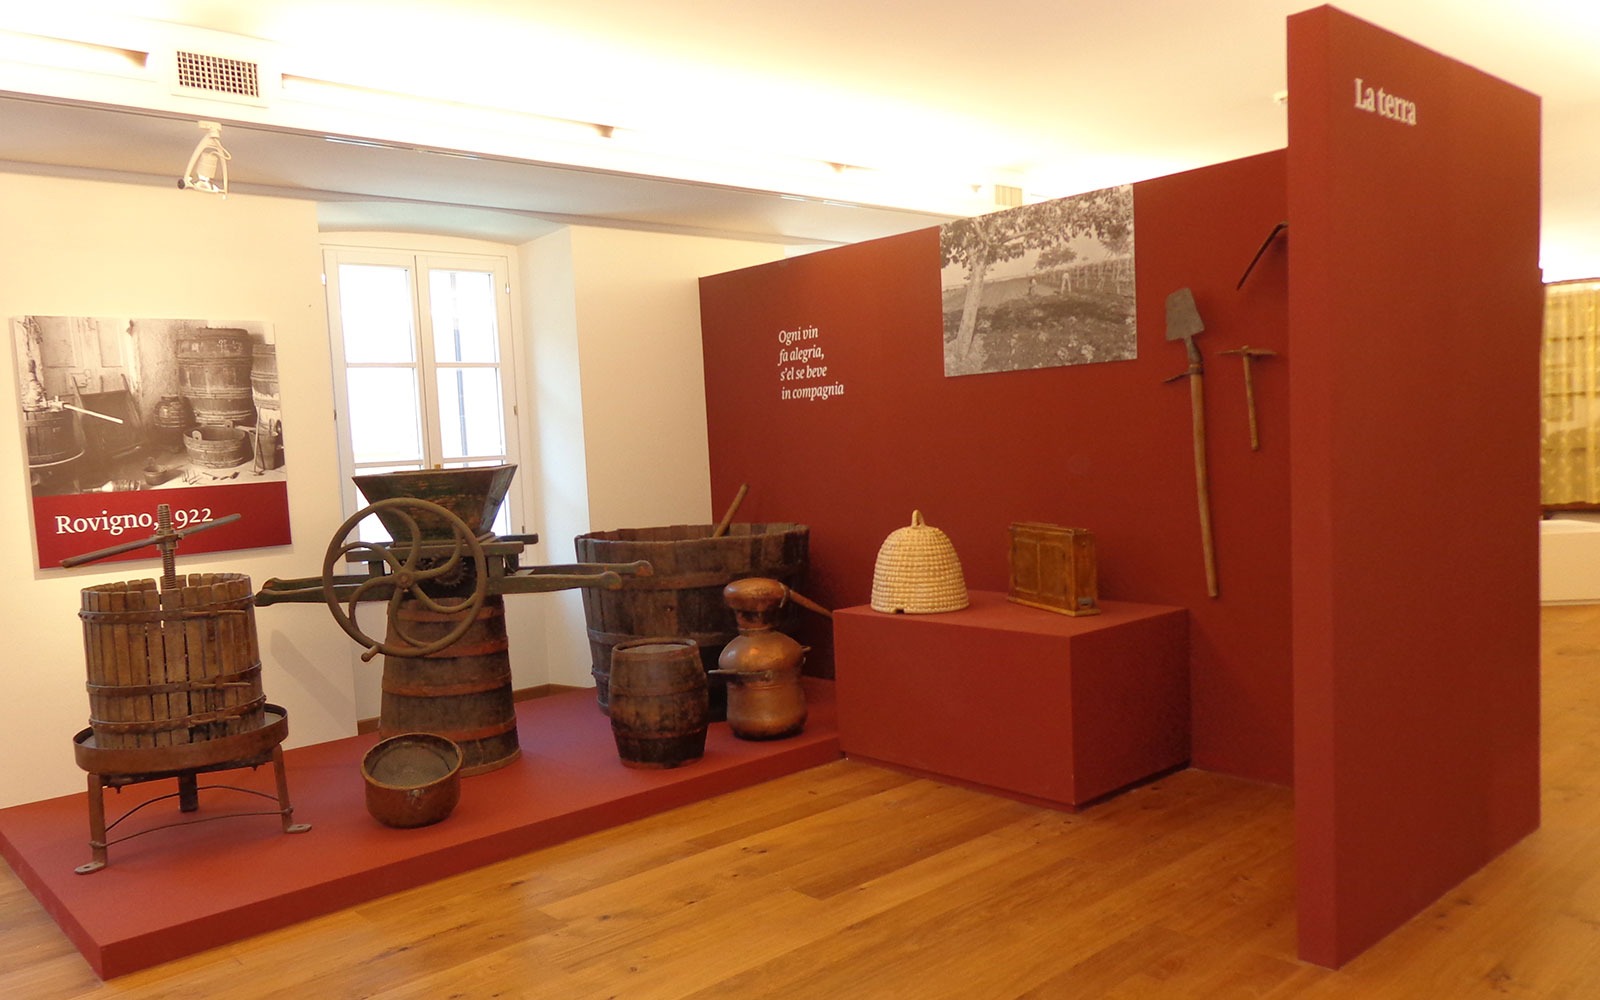 Museo della civiltà istriana fiumana e dalmata